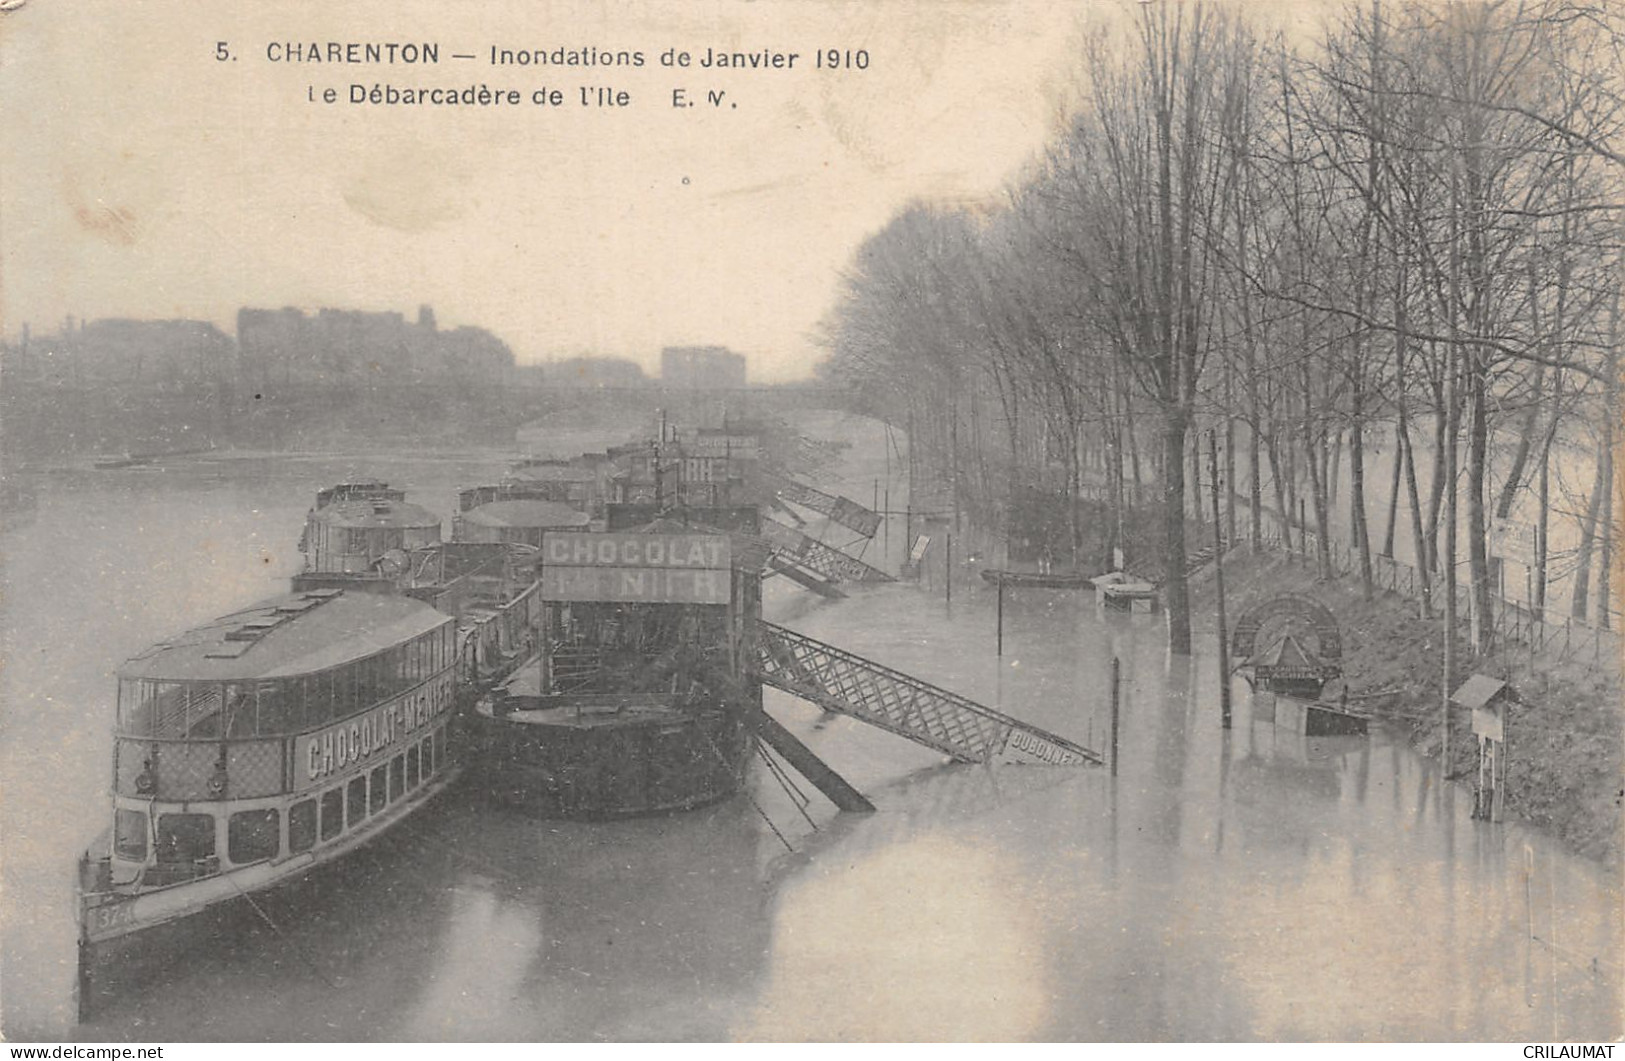 94-CHARENTON-DEBARCADERE DE L ILE-INONDATION 1910-N 6010-F/0371 - Charenton Le Pont